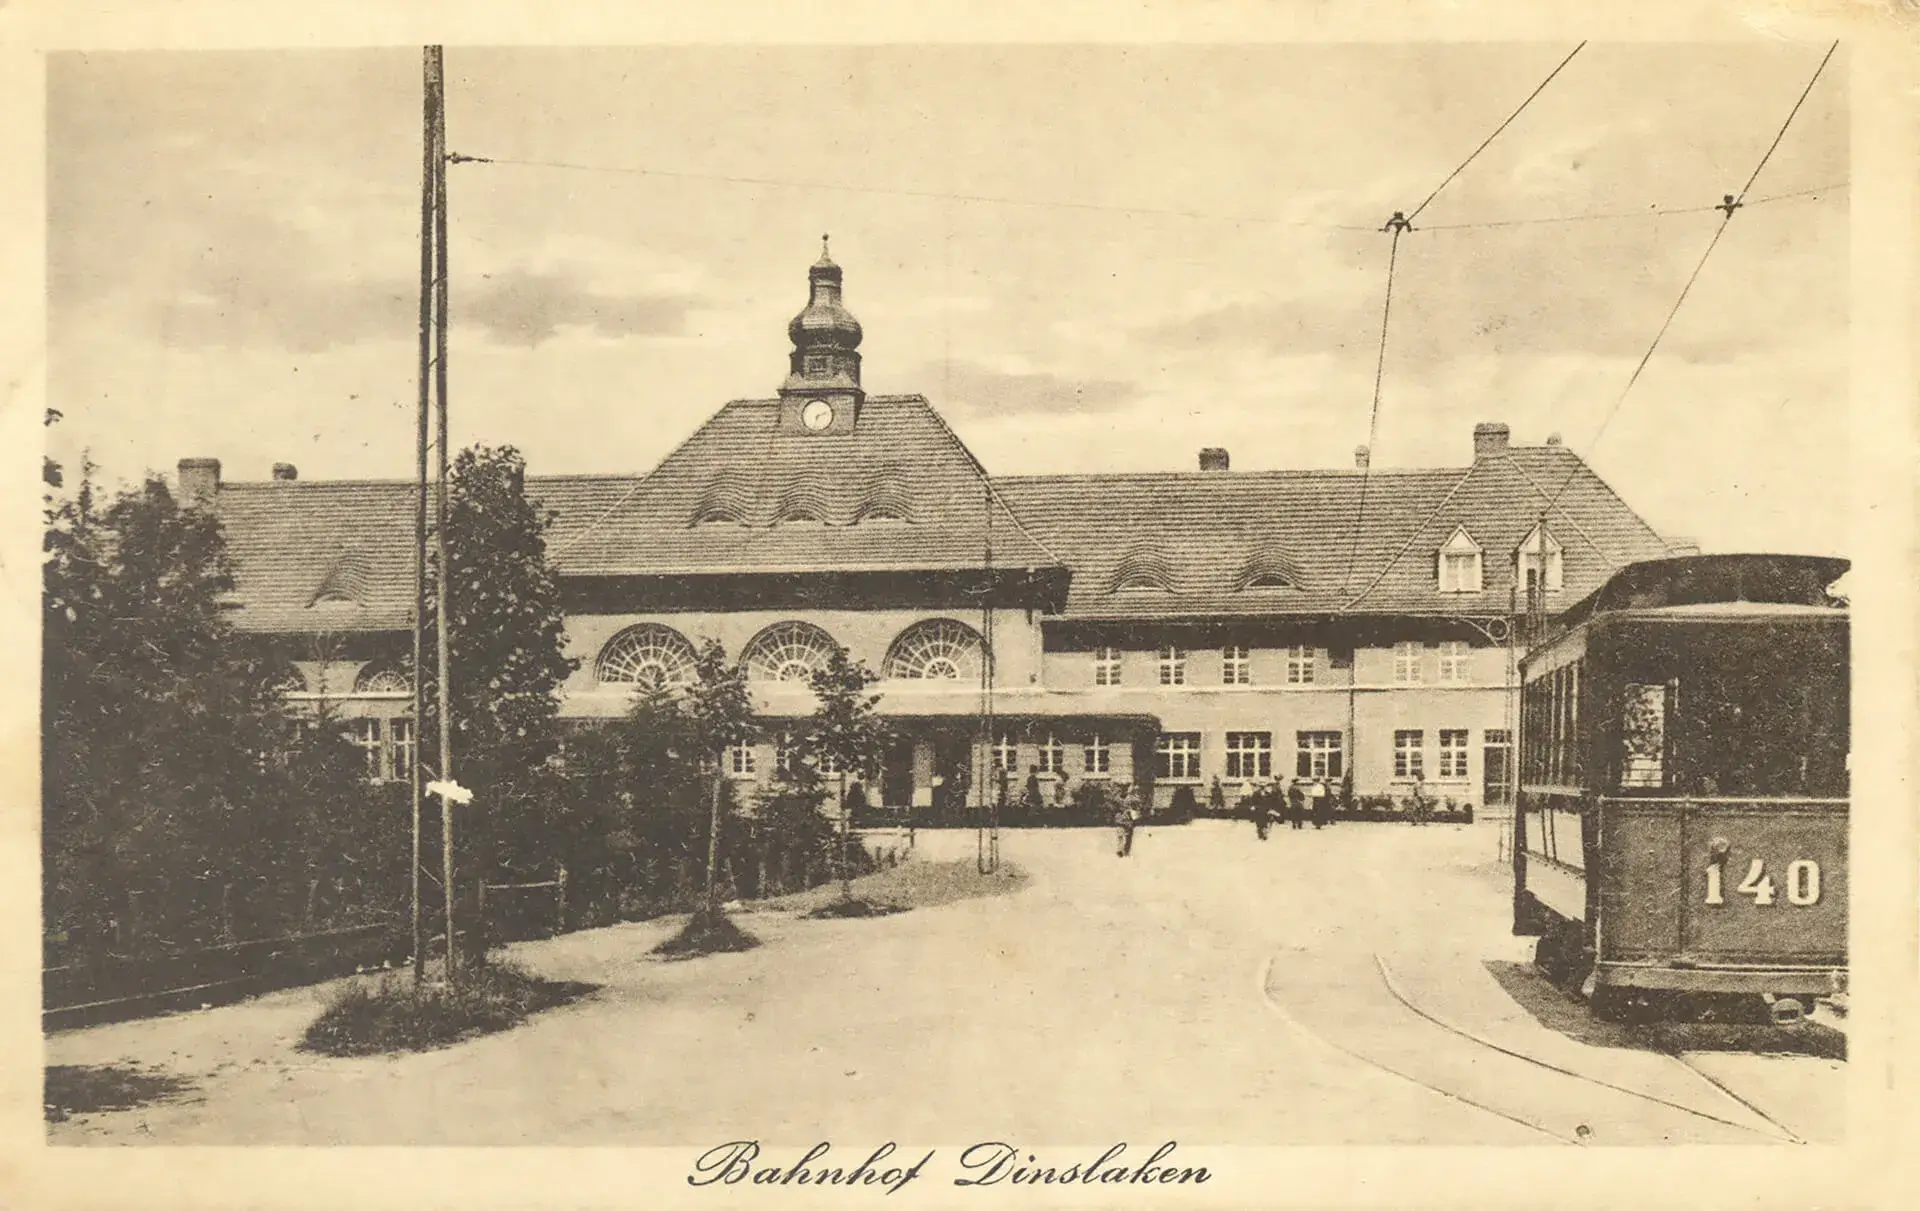 Bahnhofsvorplatz in Dinslaken mit Straßenbahn, die ab 1900 von Duisburg-Neumühl nach Dinslaken zur Duisburger Straße fuhr und erst seit 1911 bis zum Bahnhof ging.